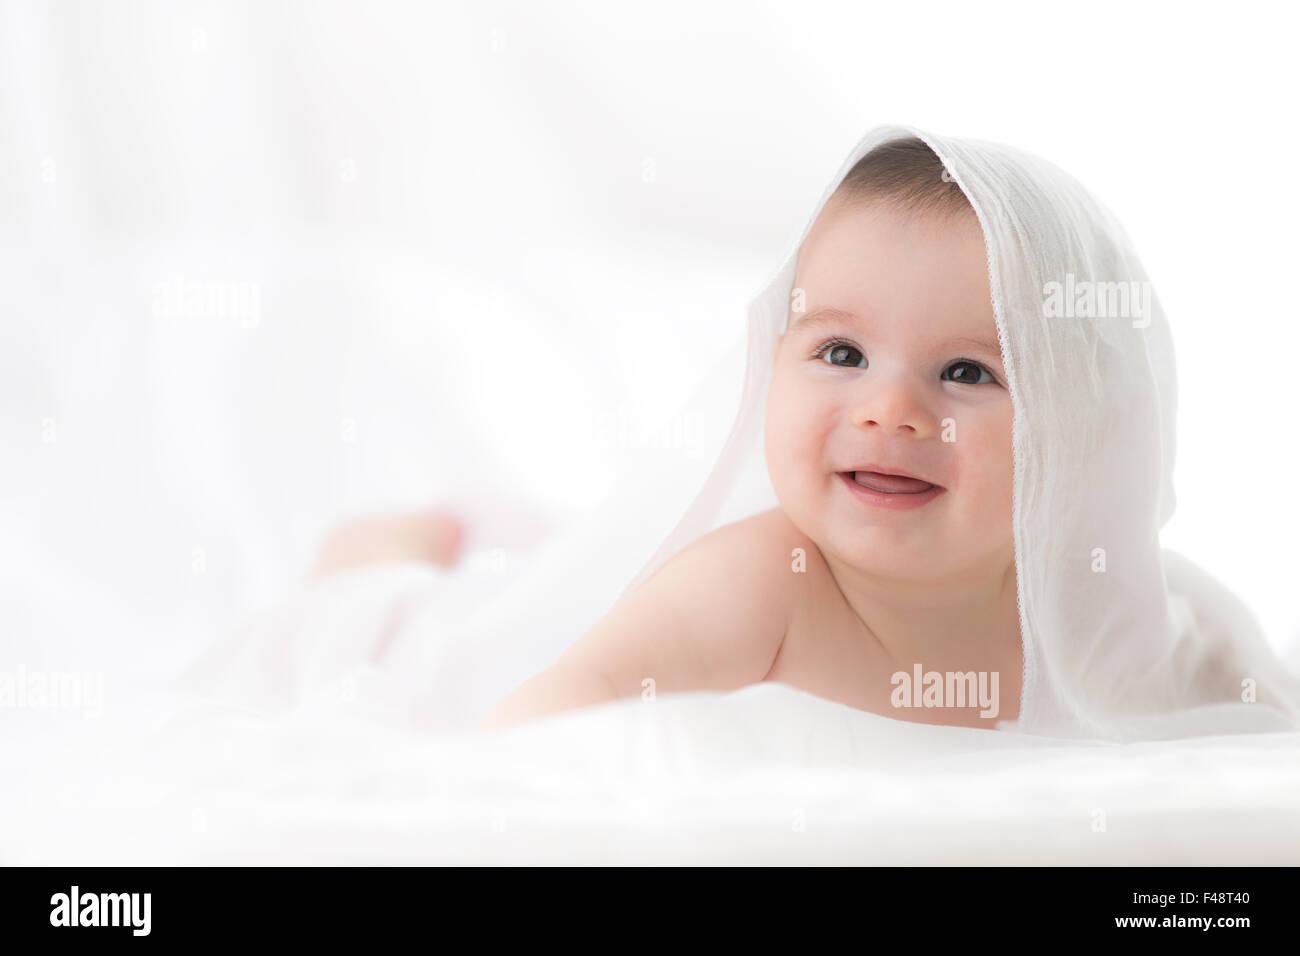 Niedliche Baby junge auf weißem Hintergrund. Stockfoto